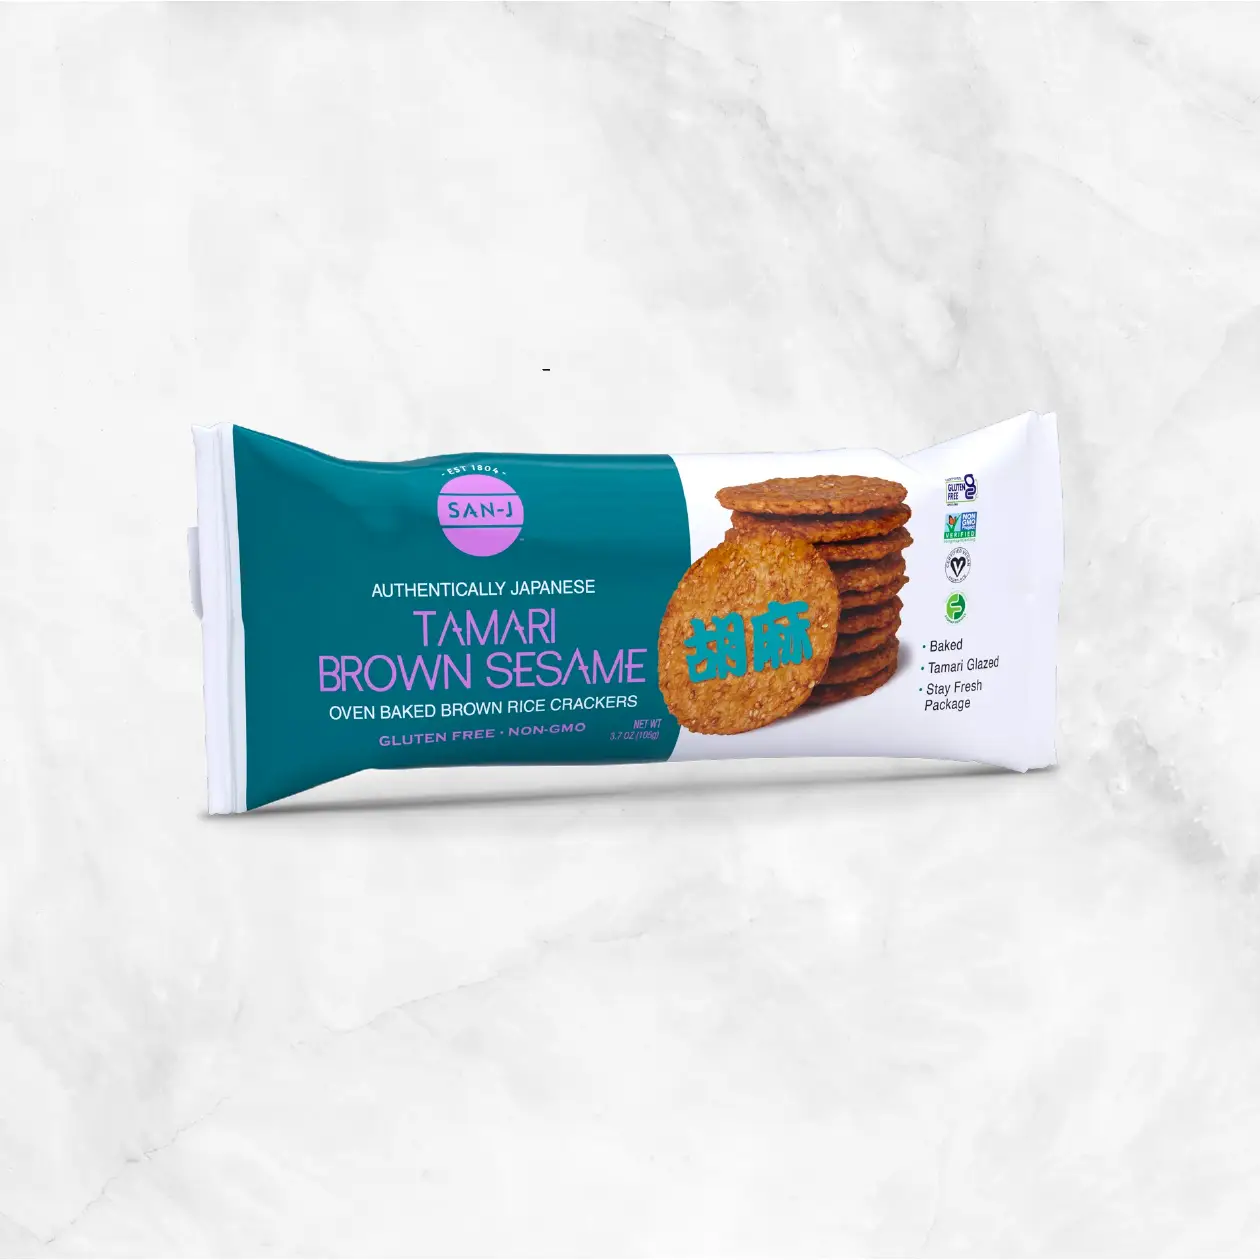 Tamari Brown Rice Crackers